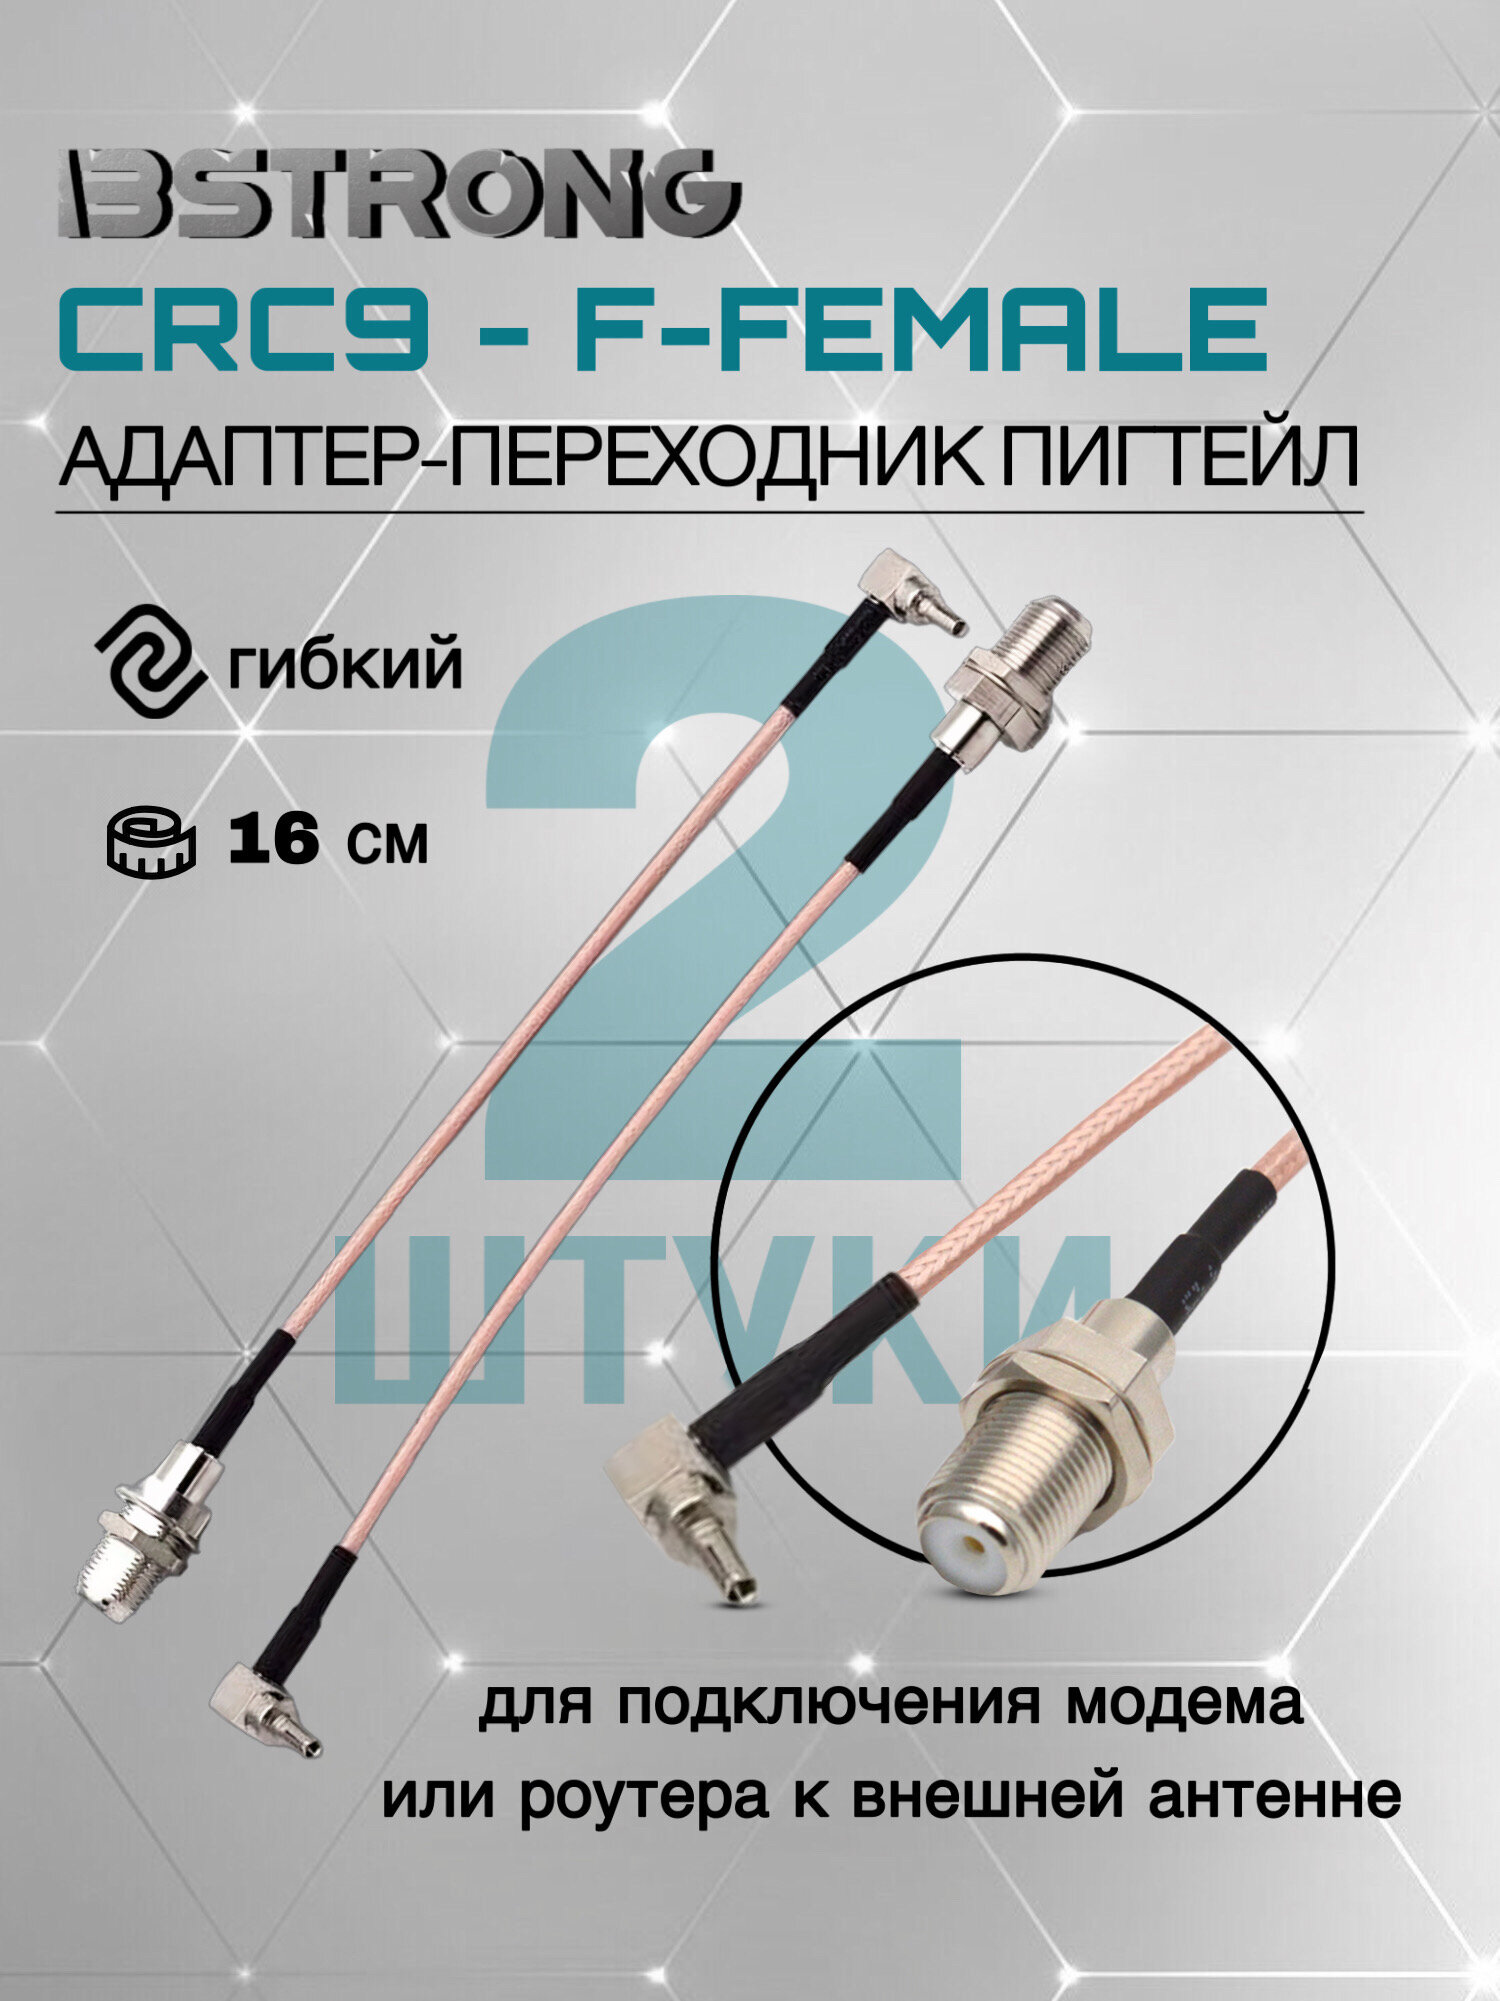 Комплект адаптер-переходник Пигтейл CRC9-F-female (2 ) 15 для подключения модема роутера к внешней антенне